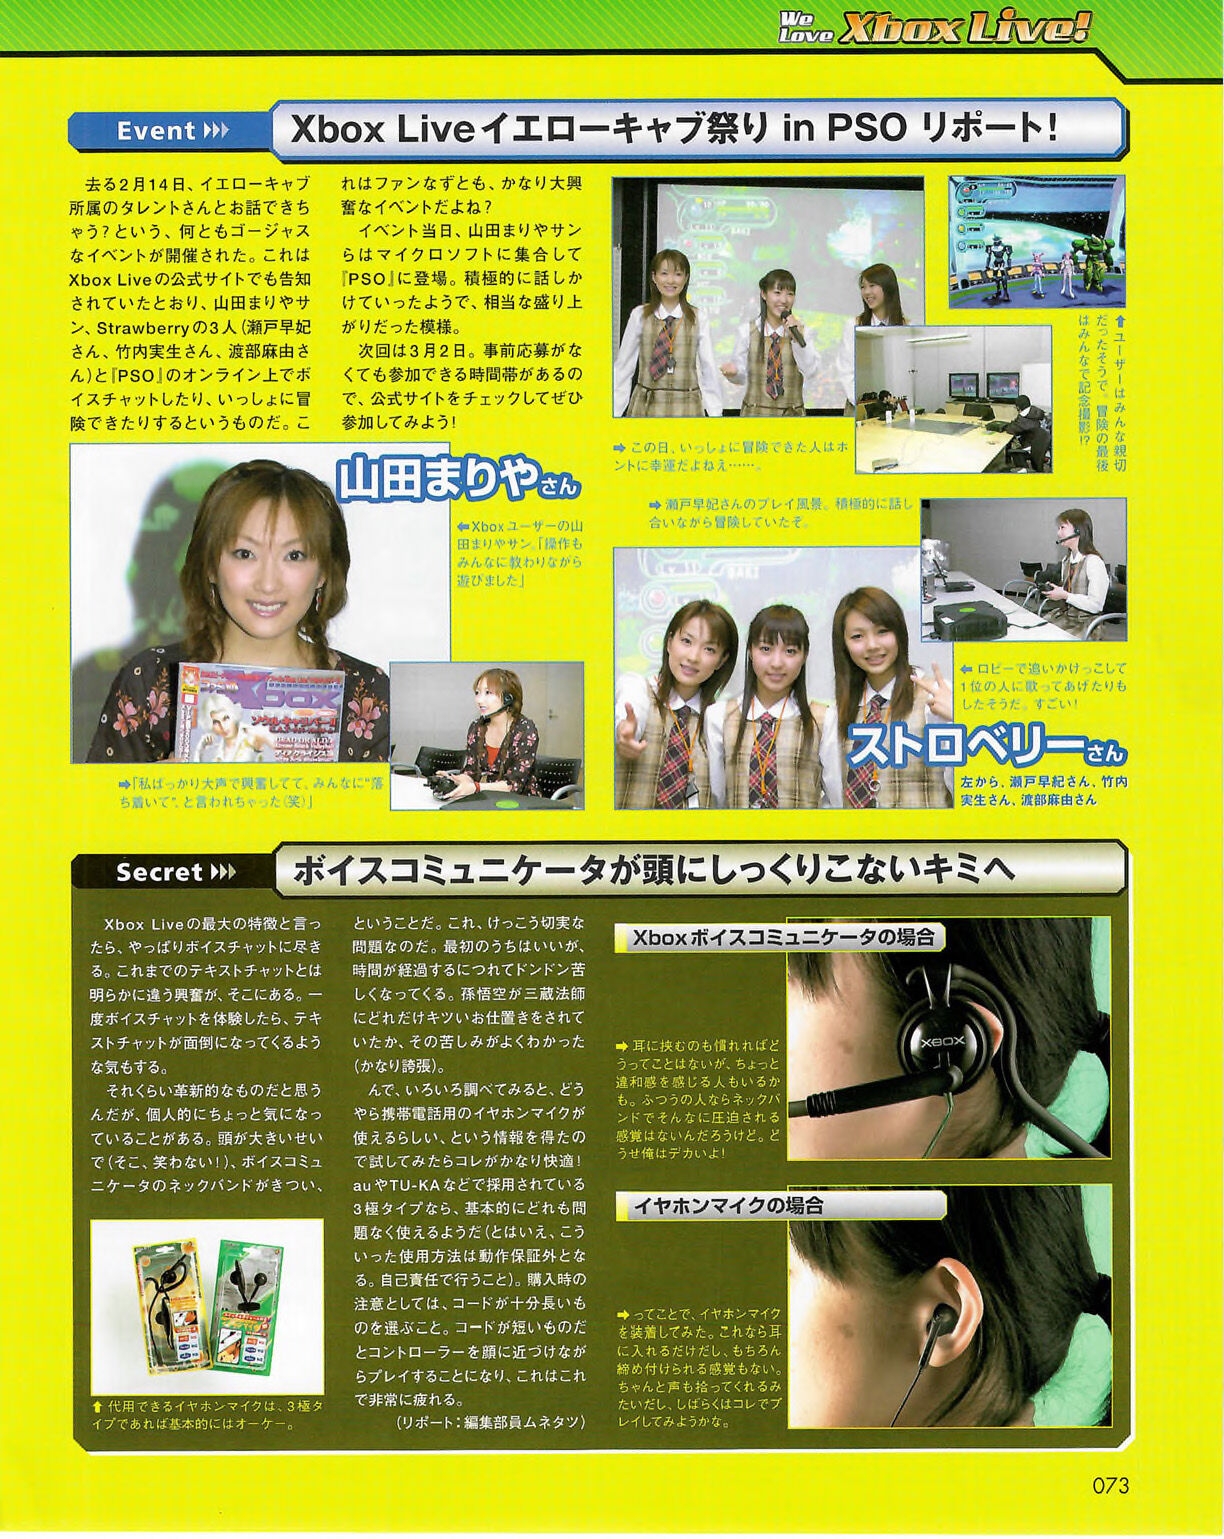 Famitsu_Xbox_2003-04_jp2 72